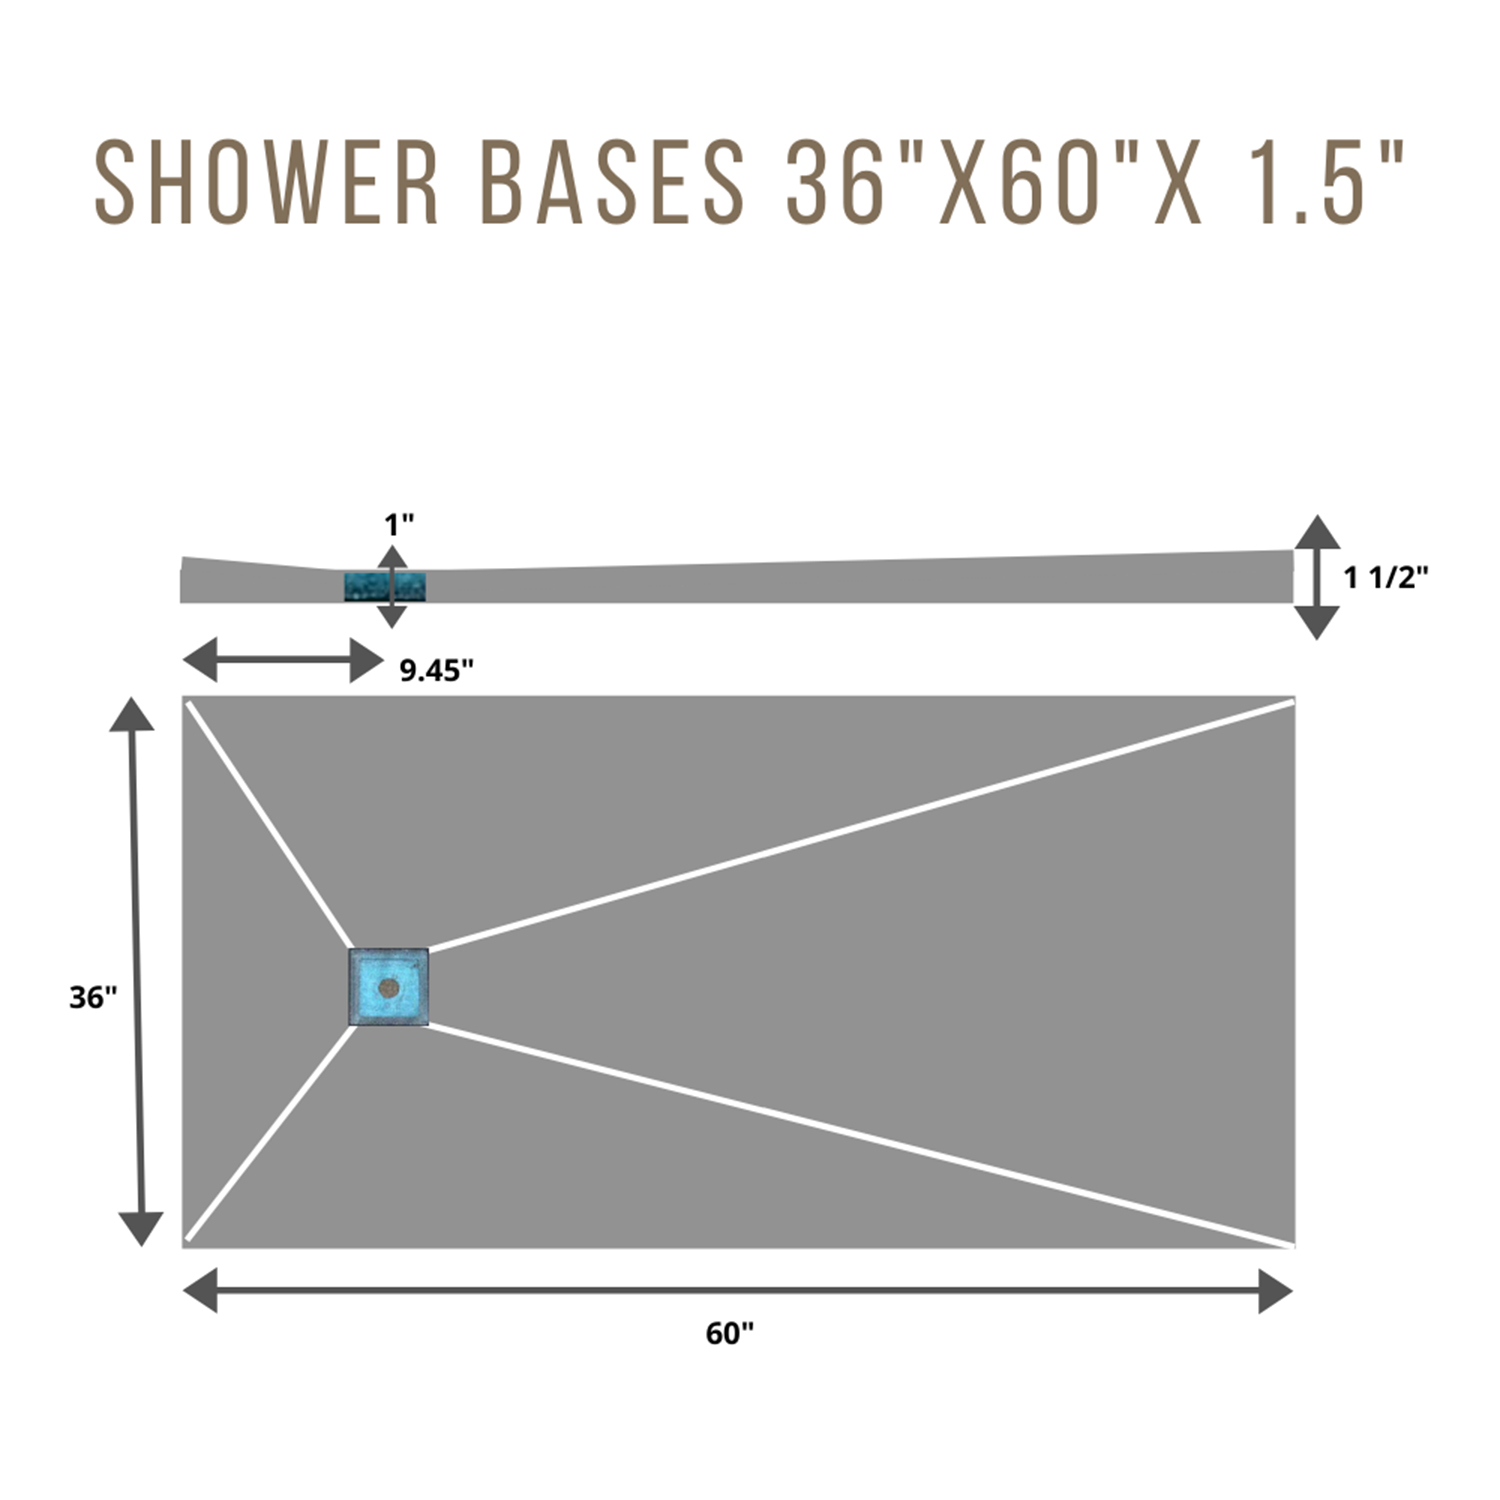 Shower Base 3x5 SIDE 6 x 6